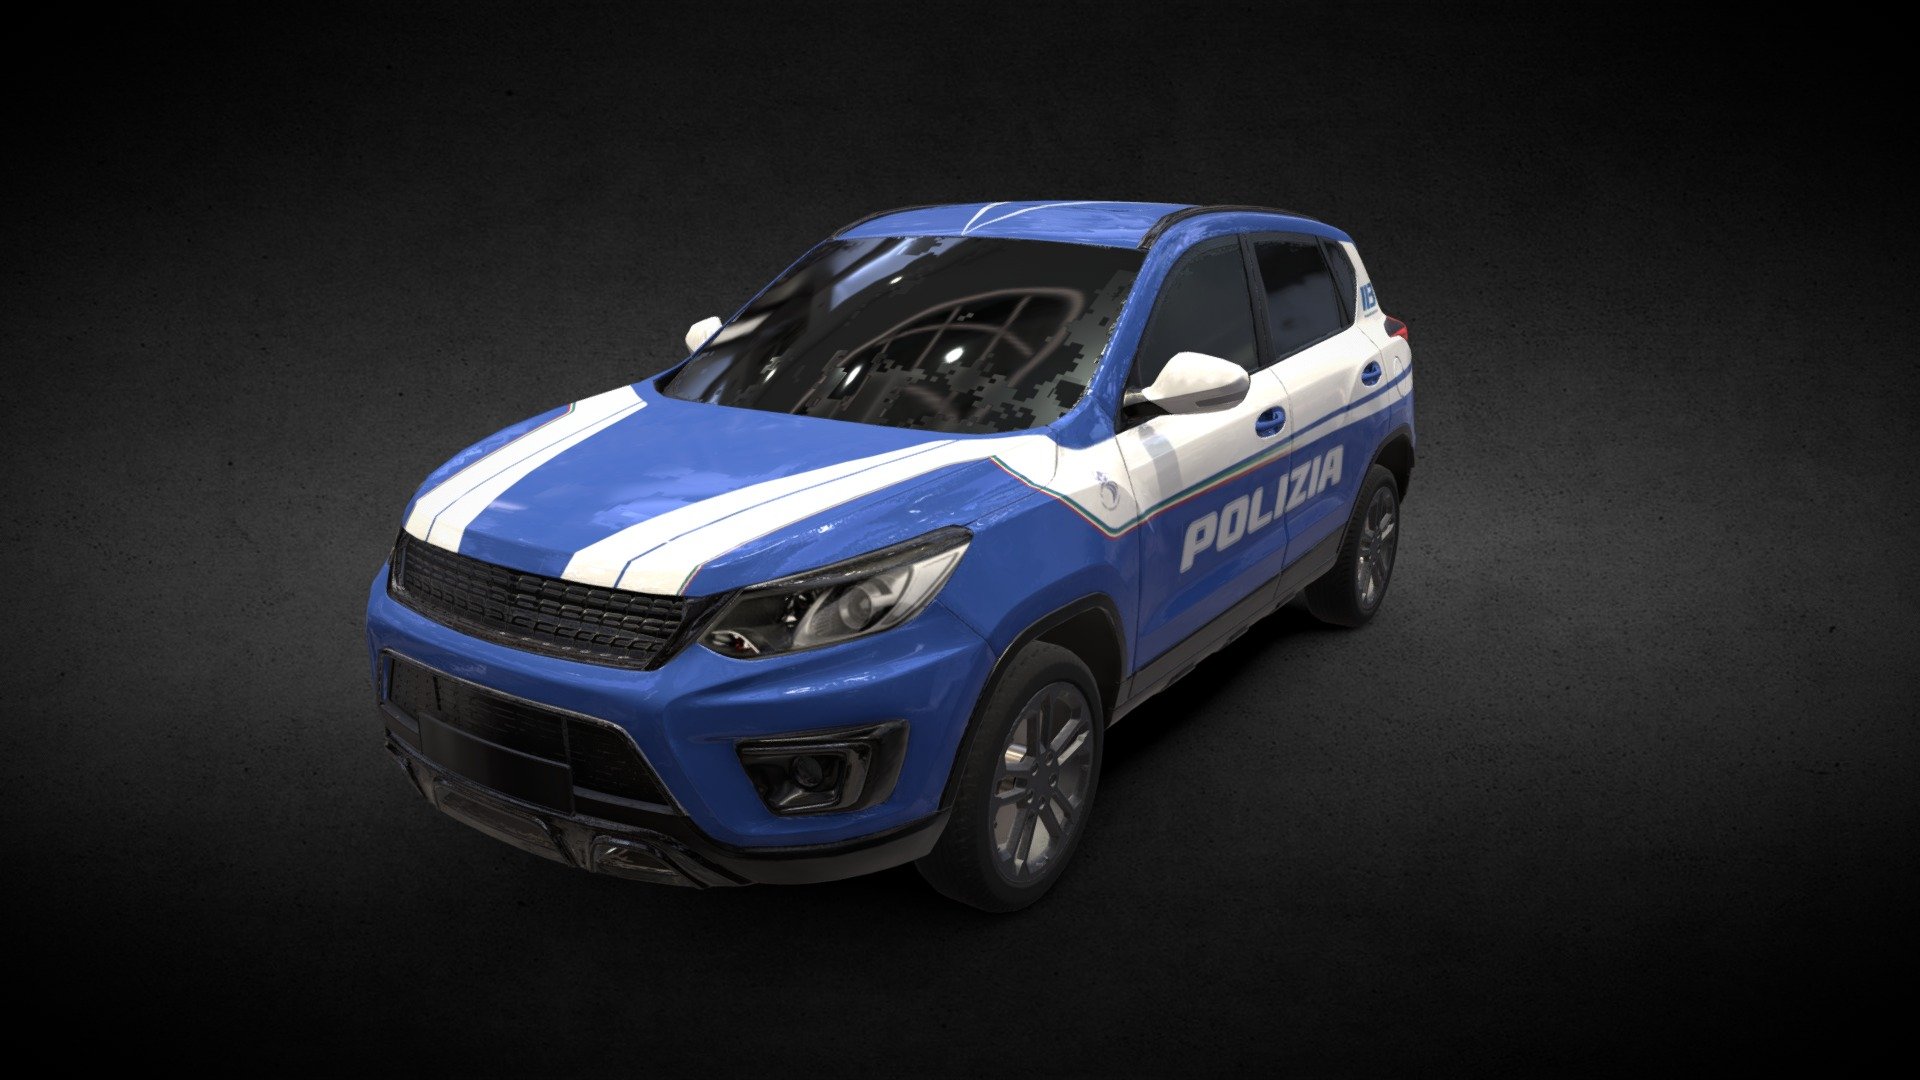 Suv Polizia di Stato - 3D model by produzionedb 3d model